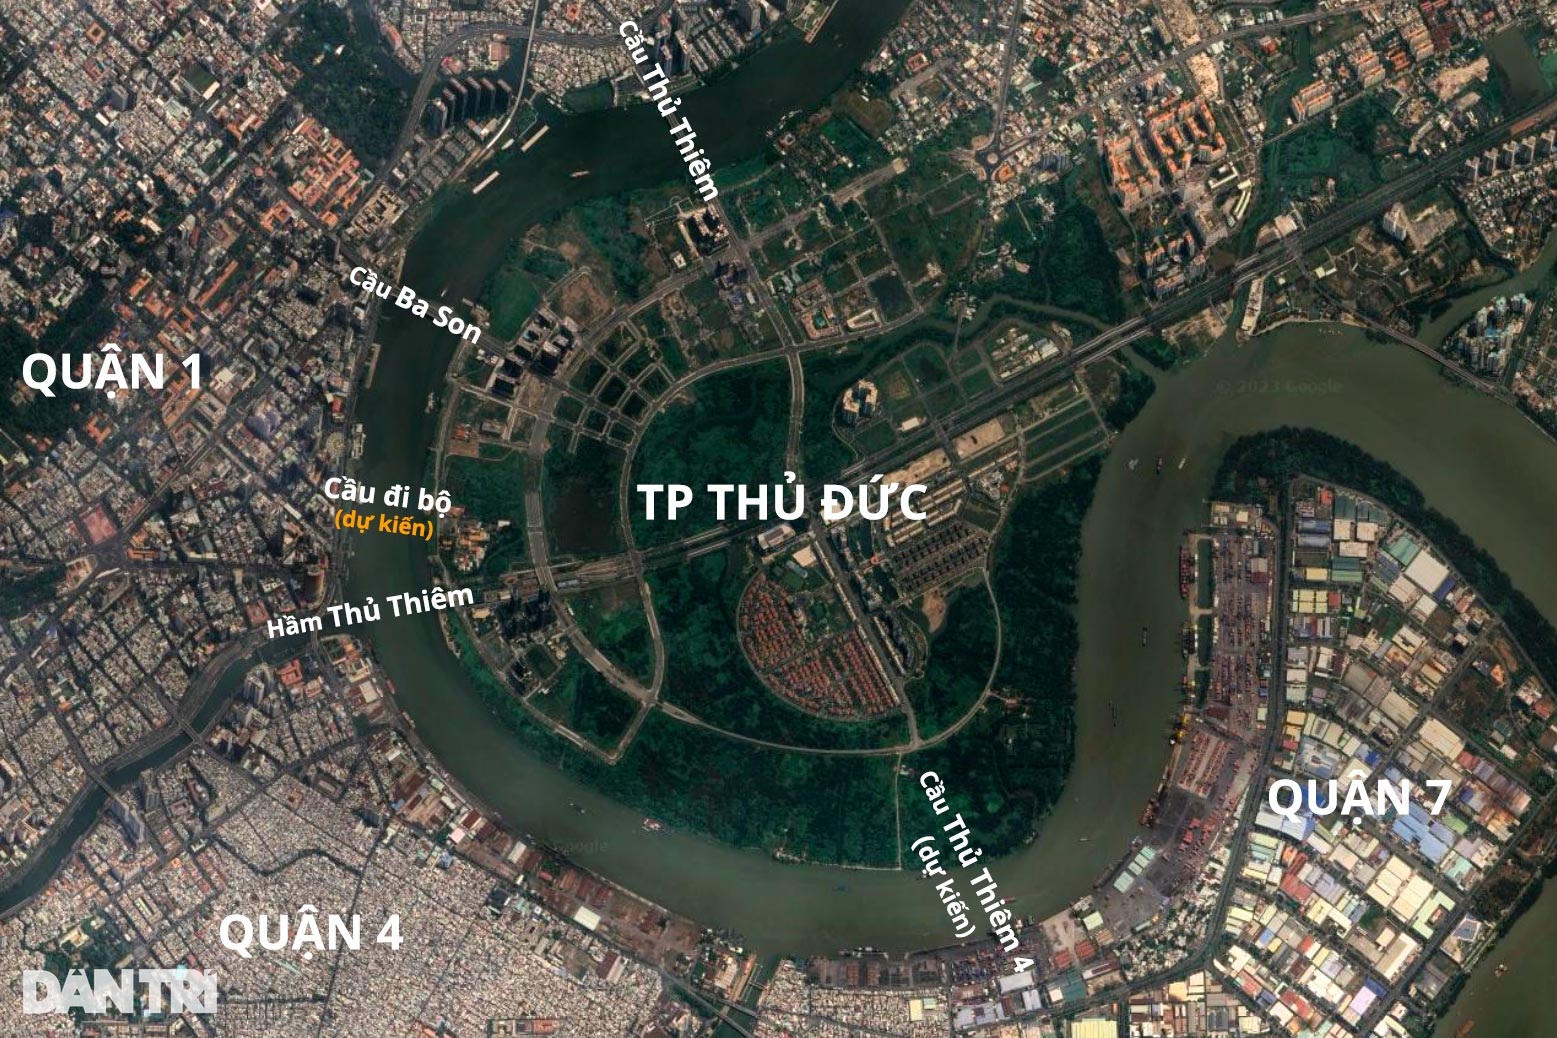 Ngắm thiết kế cầu đi bộ hình lá dừa nước trên sông Sài Gòn - 11